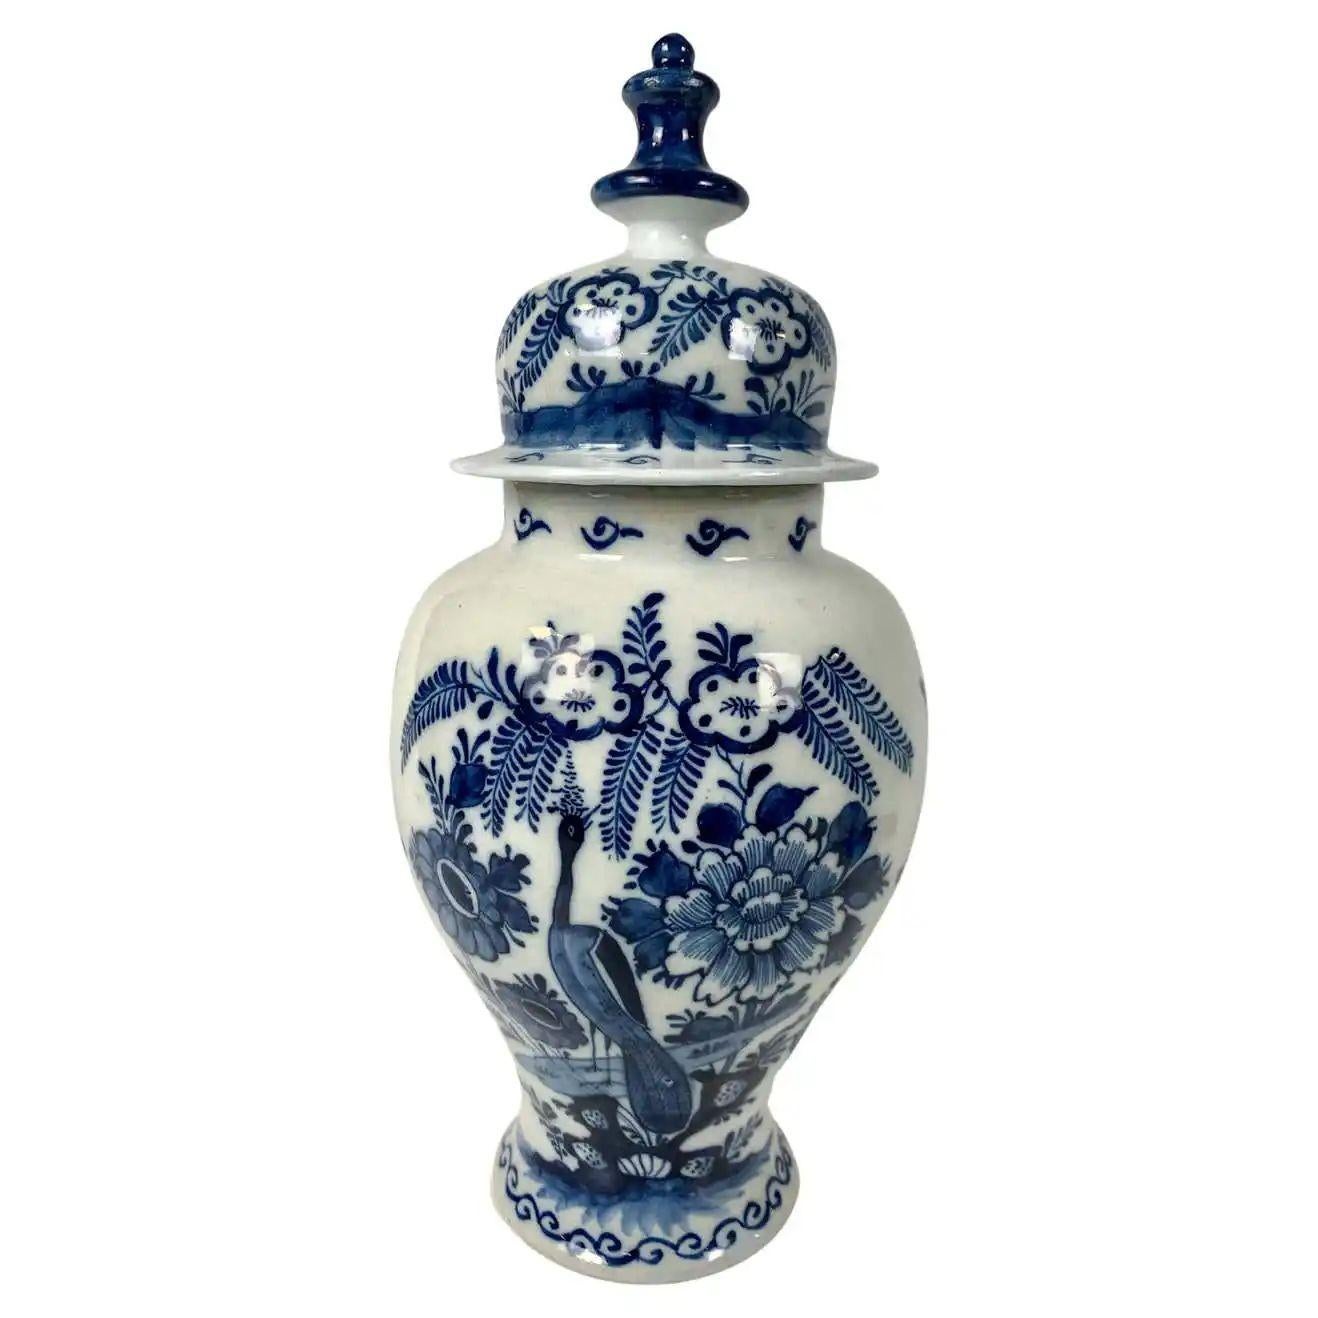 Whiting est un groupe de jarres et de vases bleus et blancs de Delft et une carafe.
Fabriquée au XVIIIe siècle, chaque pièce a son caractère.
Ensemble, ils forment un groupe magnifique.
Voici les détails de chaque pièce en commençant par la gauche